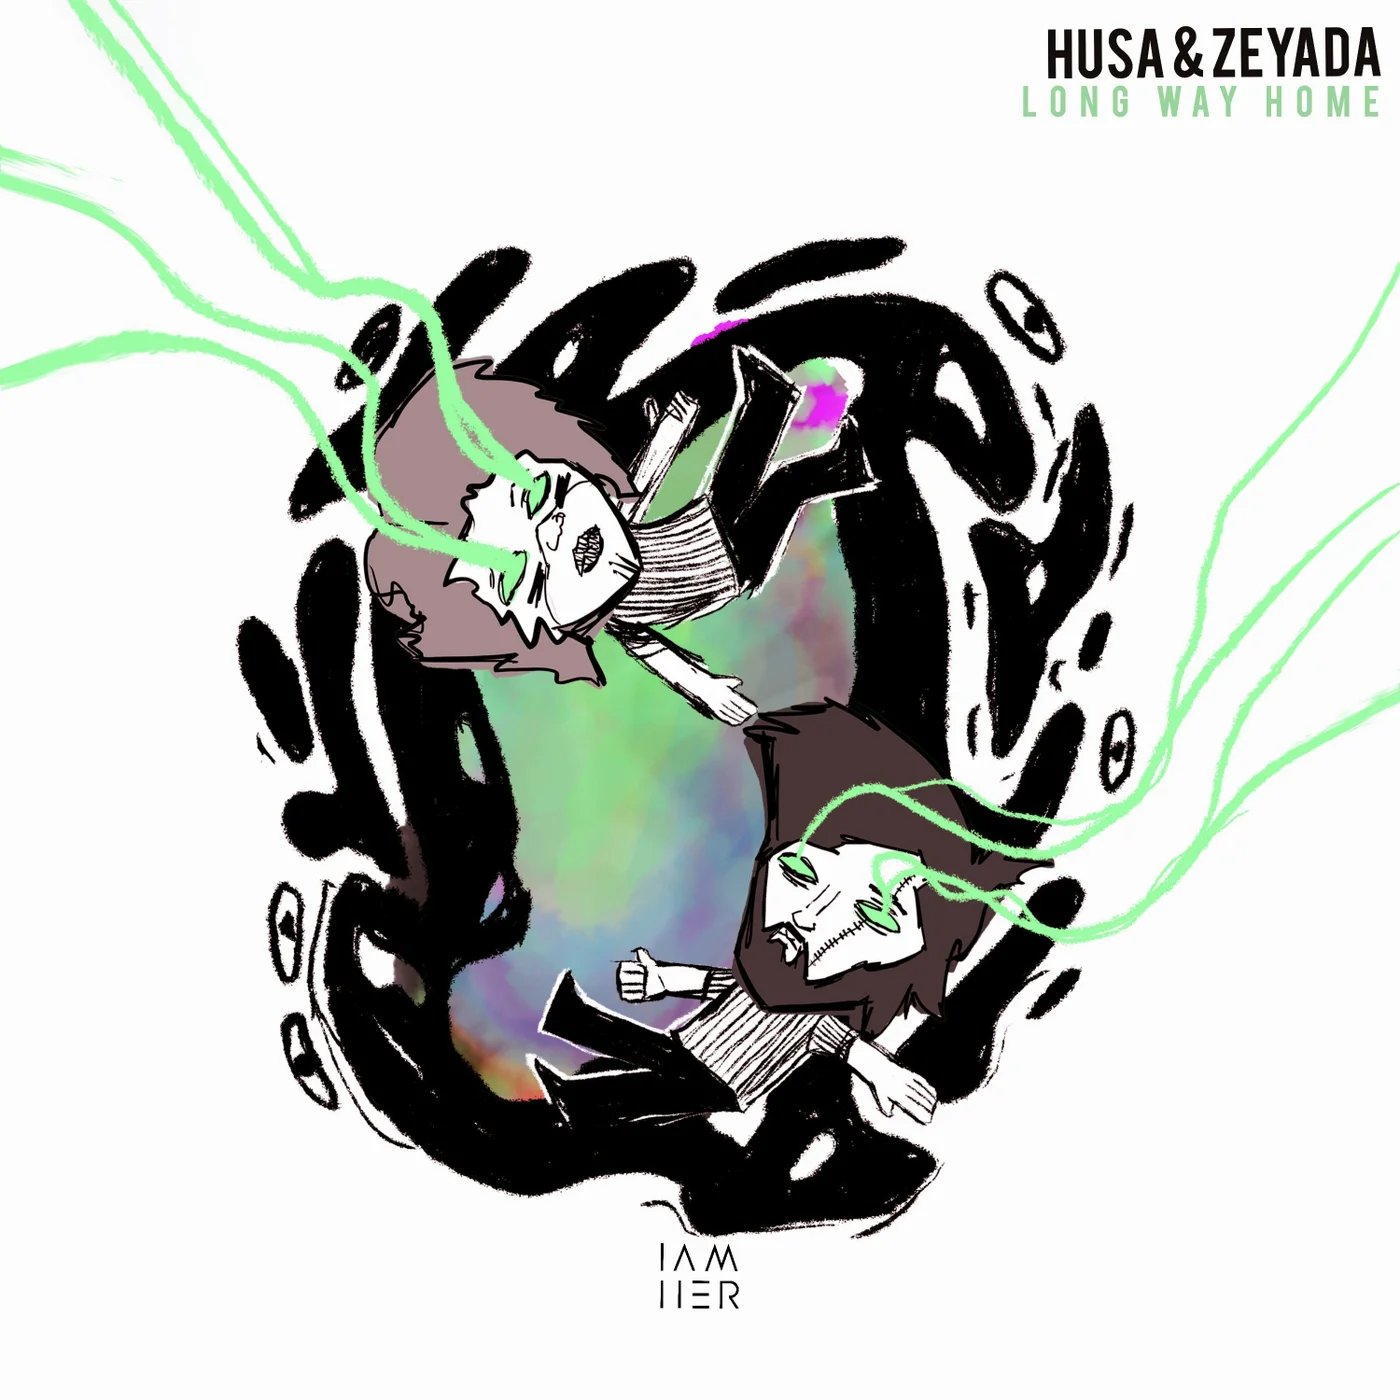 Husa & Zeyada - Long Way Home (Woe Remix)